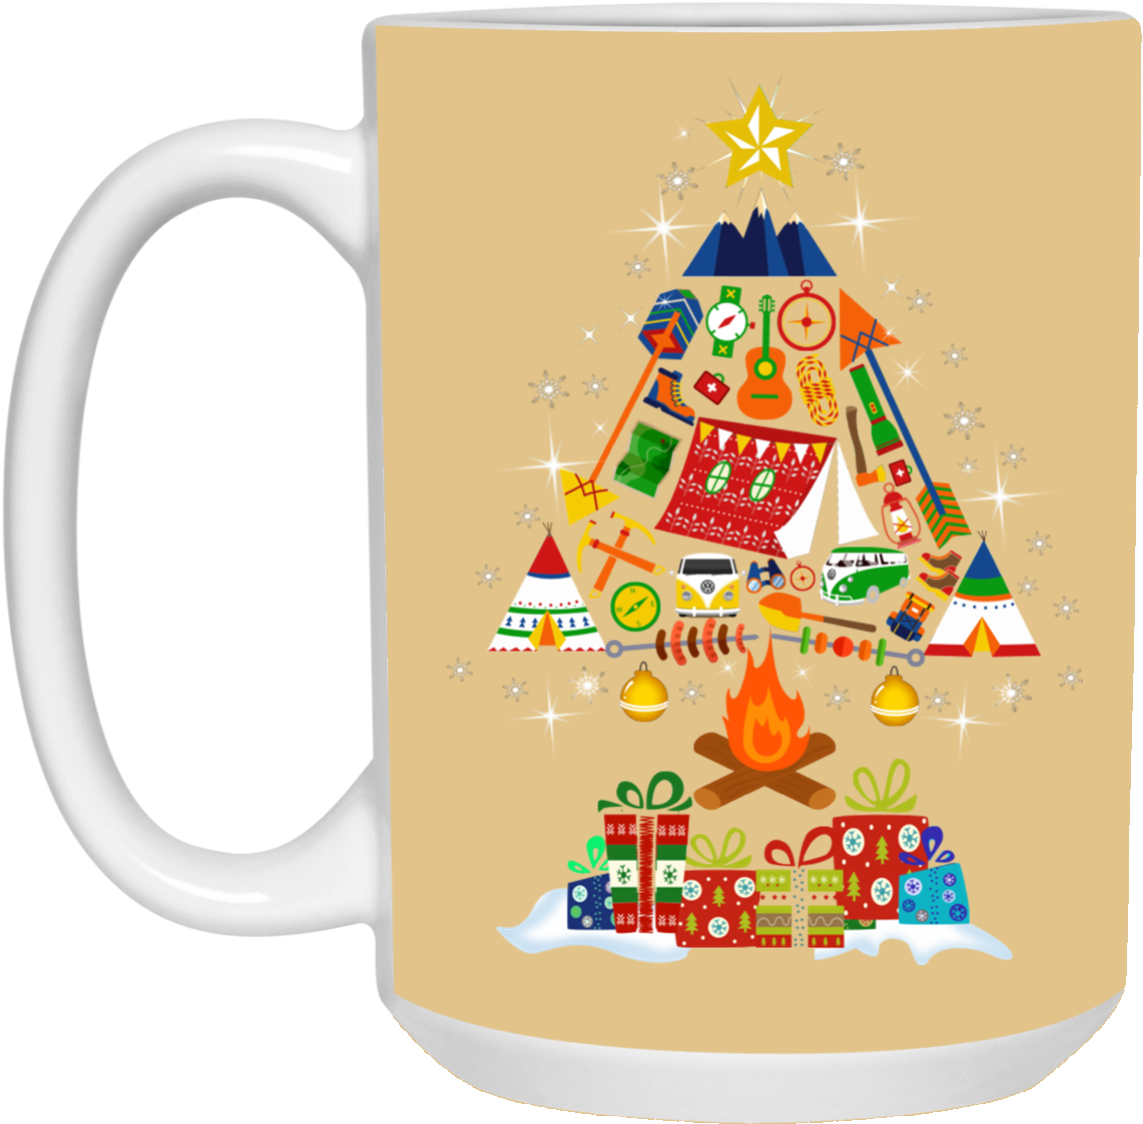 Festive Christmas Tree Mug Design